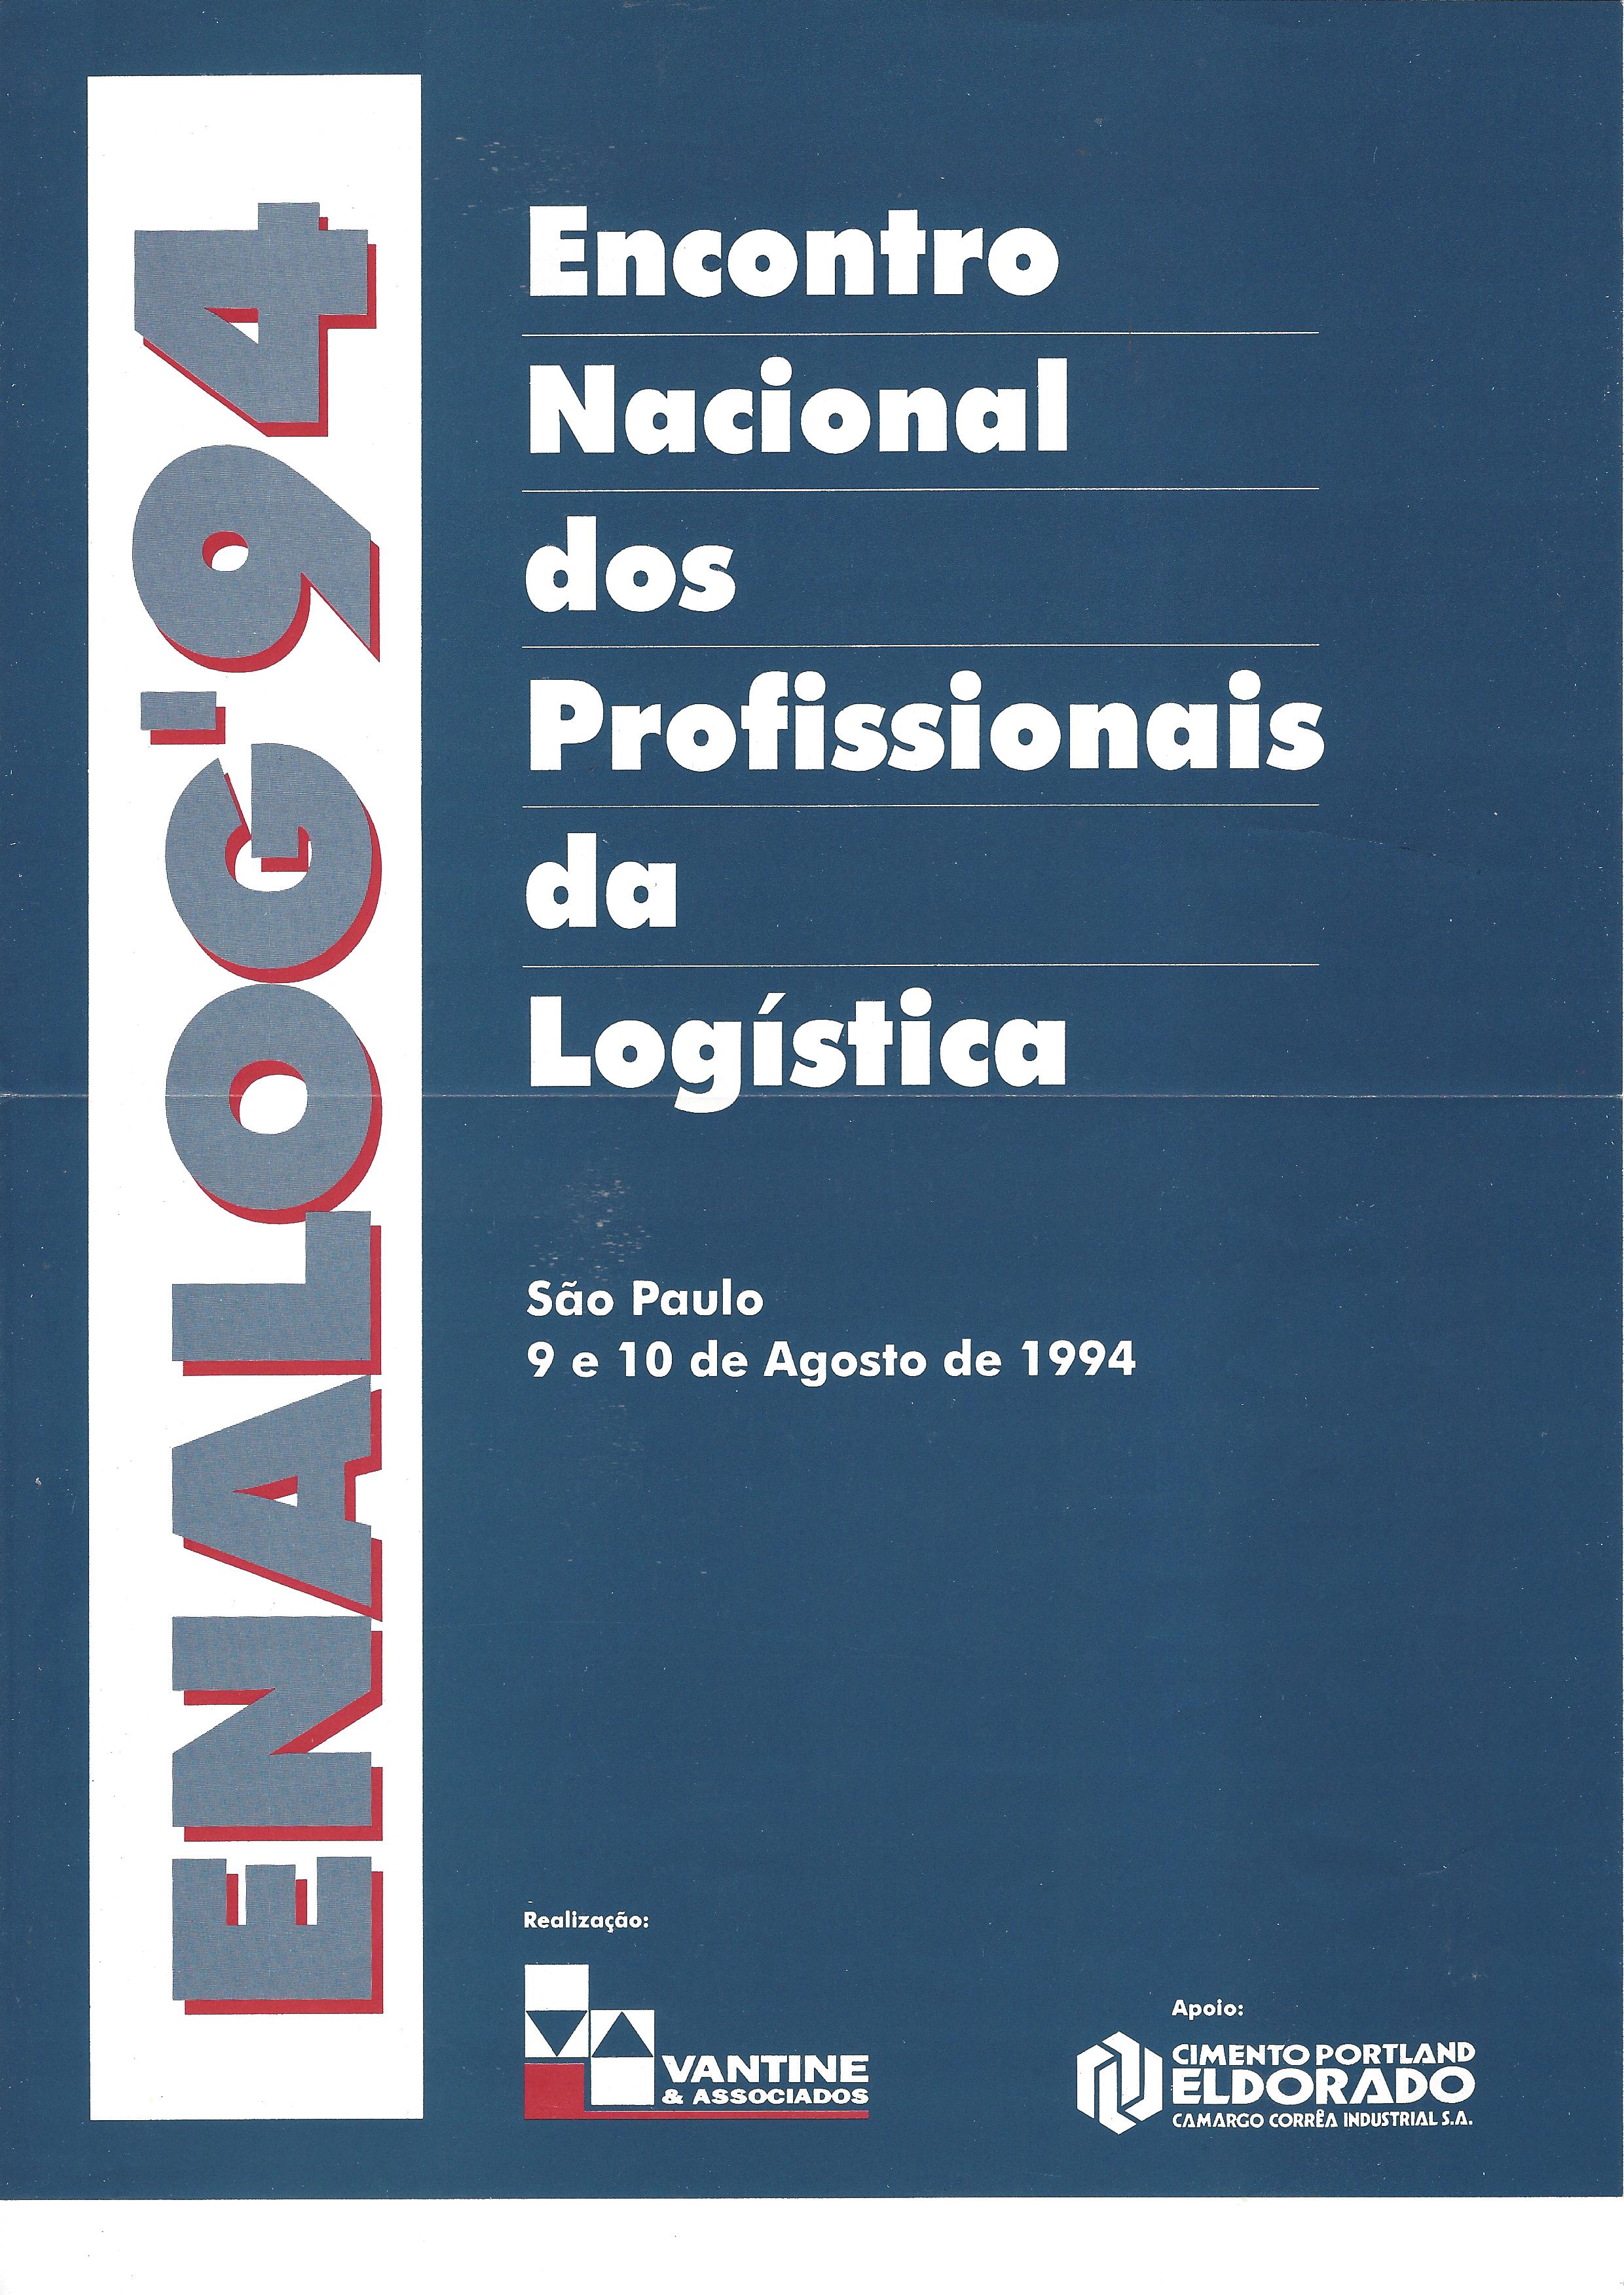 ENALOG’94 – Encontro nacional dos profissionais da logística